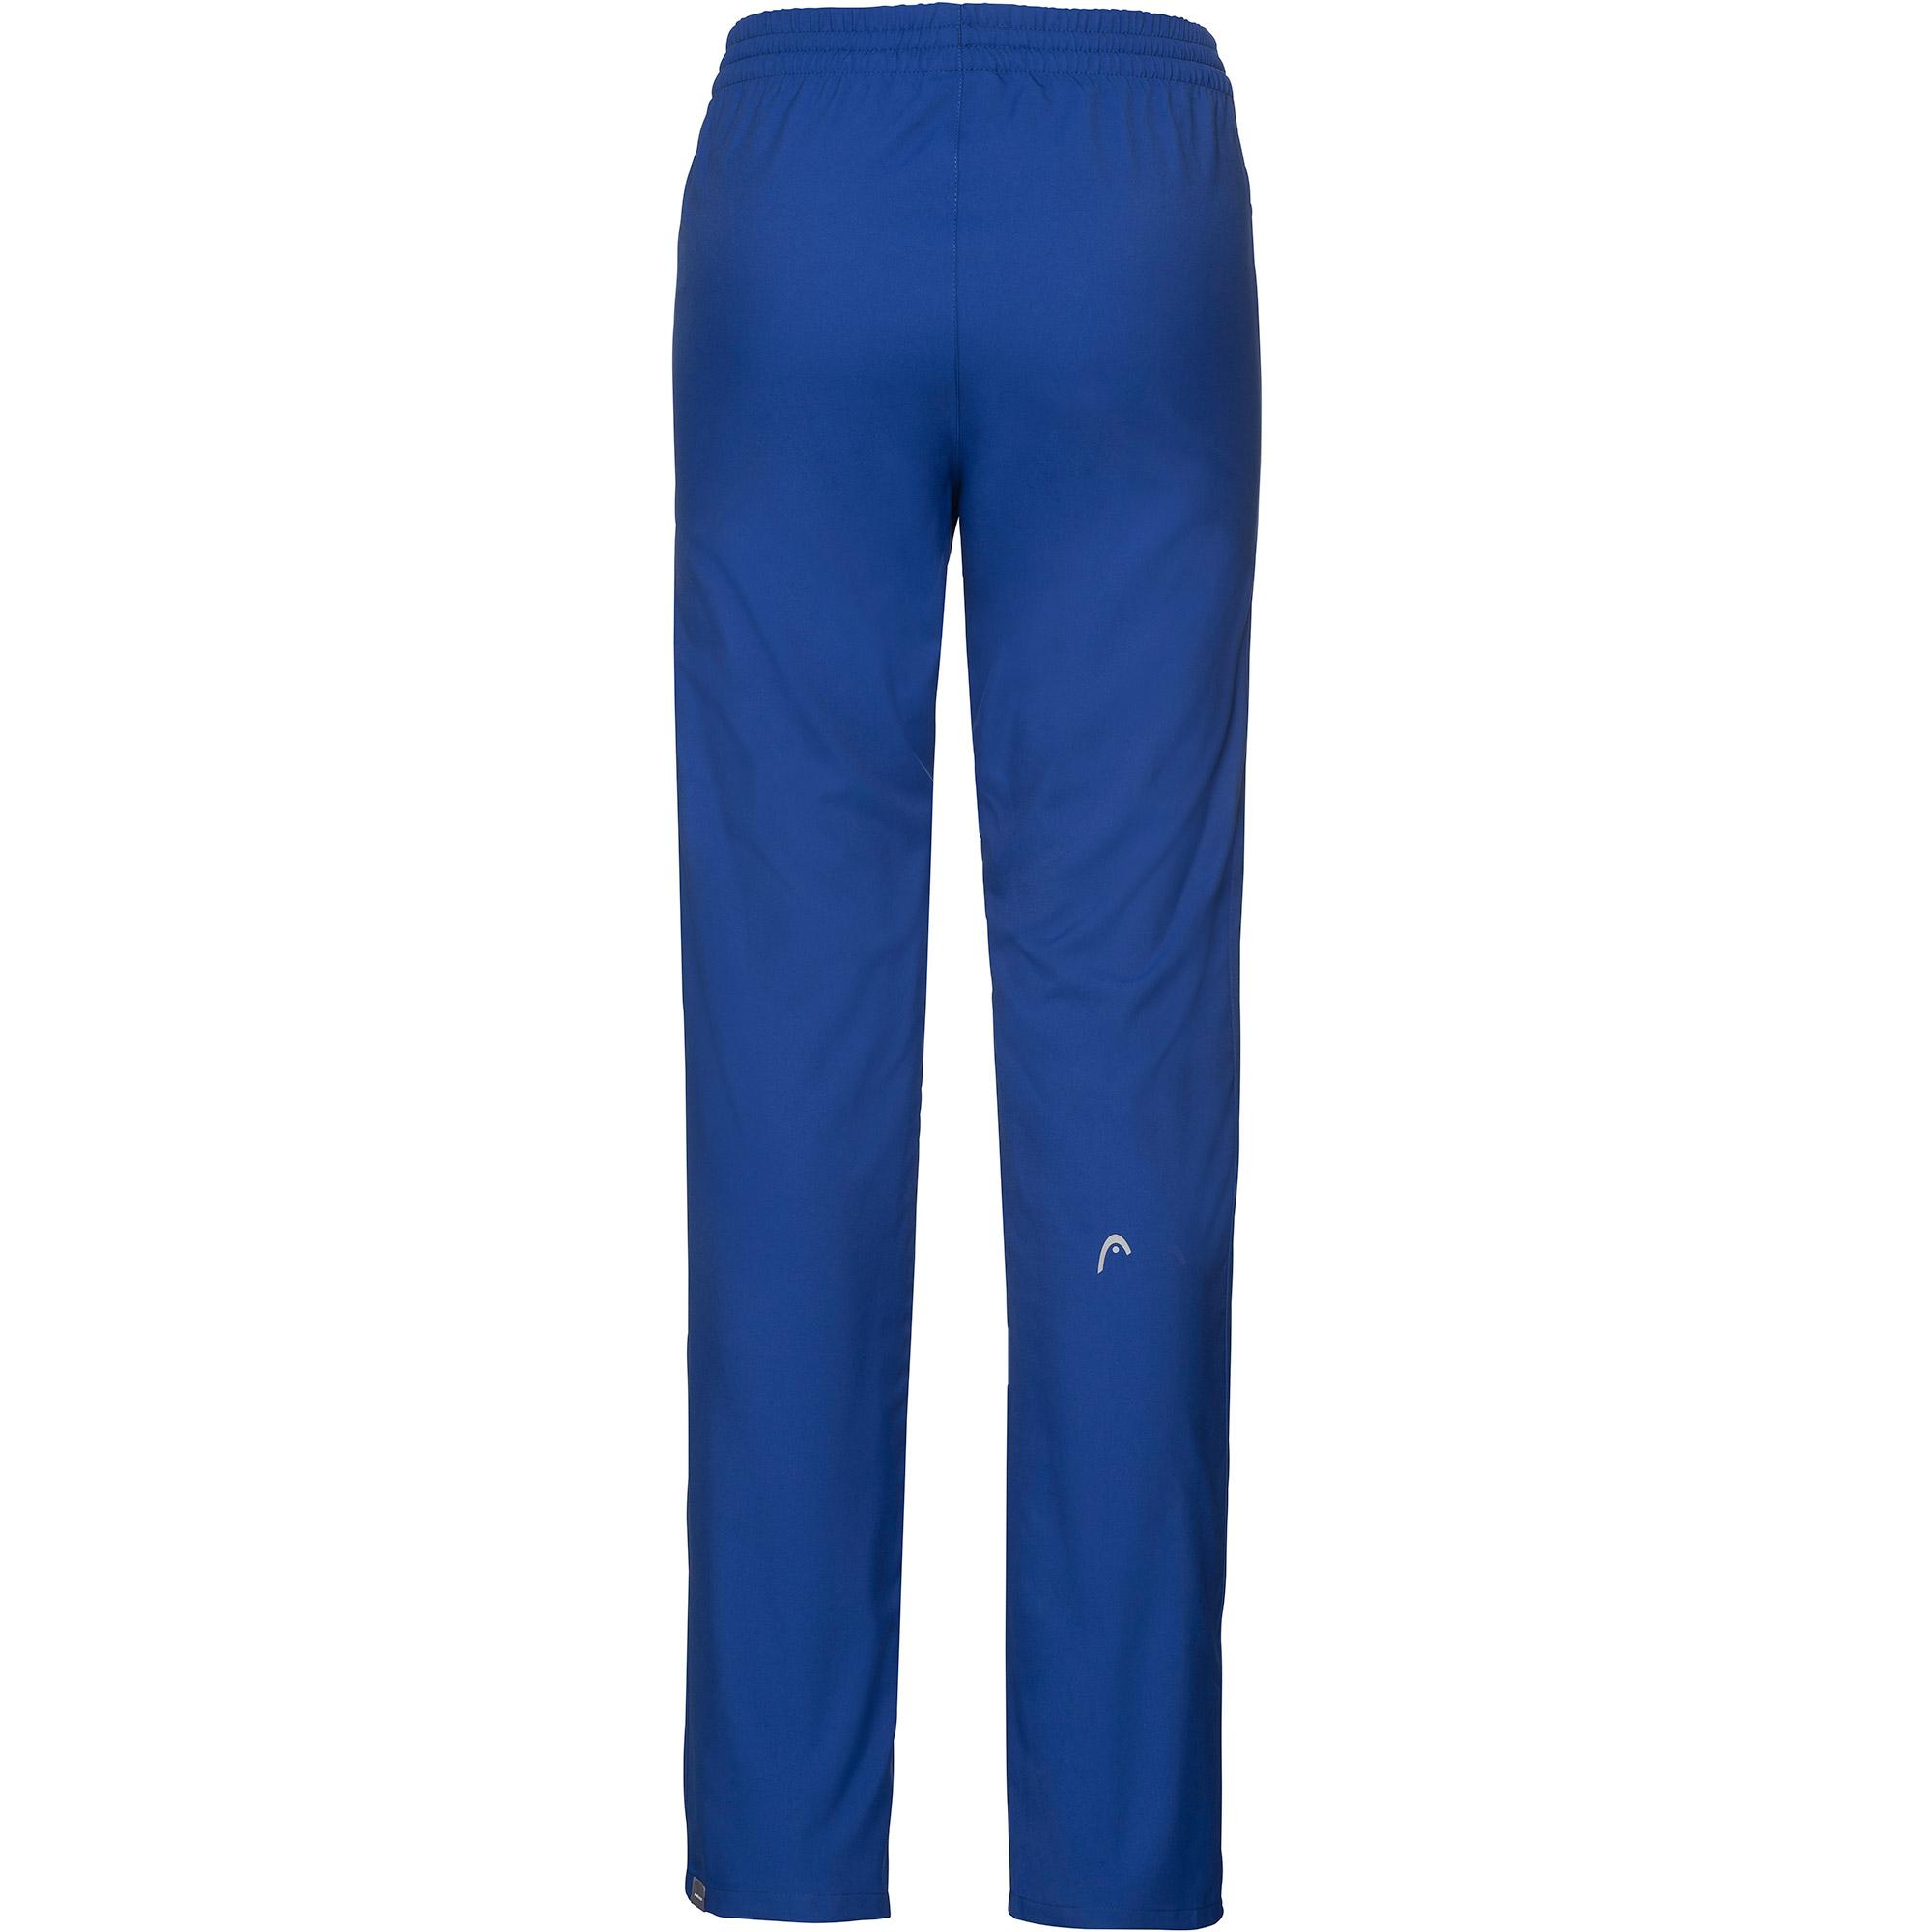 Head Womens Club Pants - Royal Blue - Tennisnuts.com